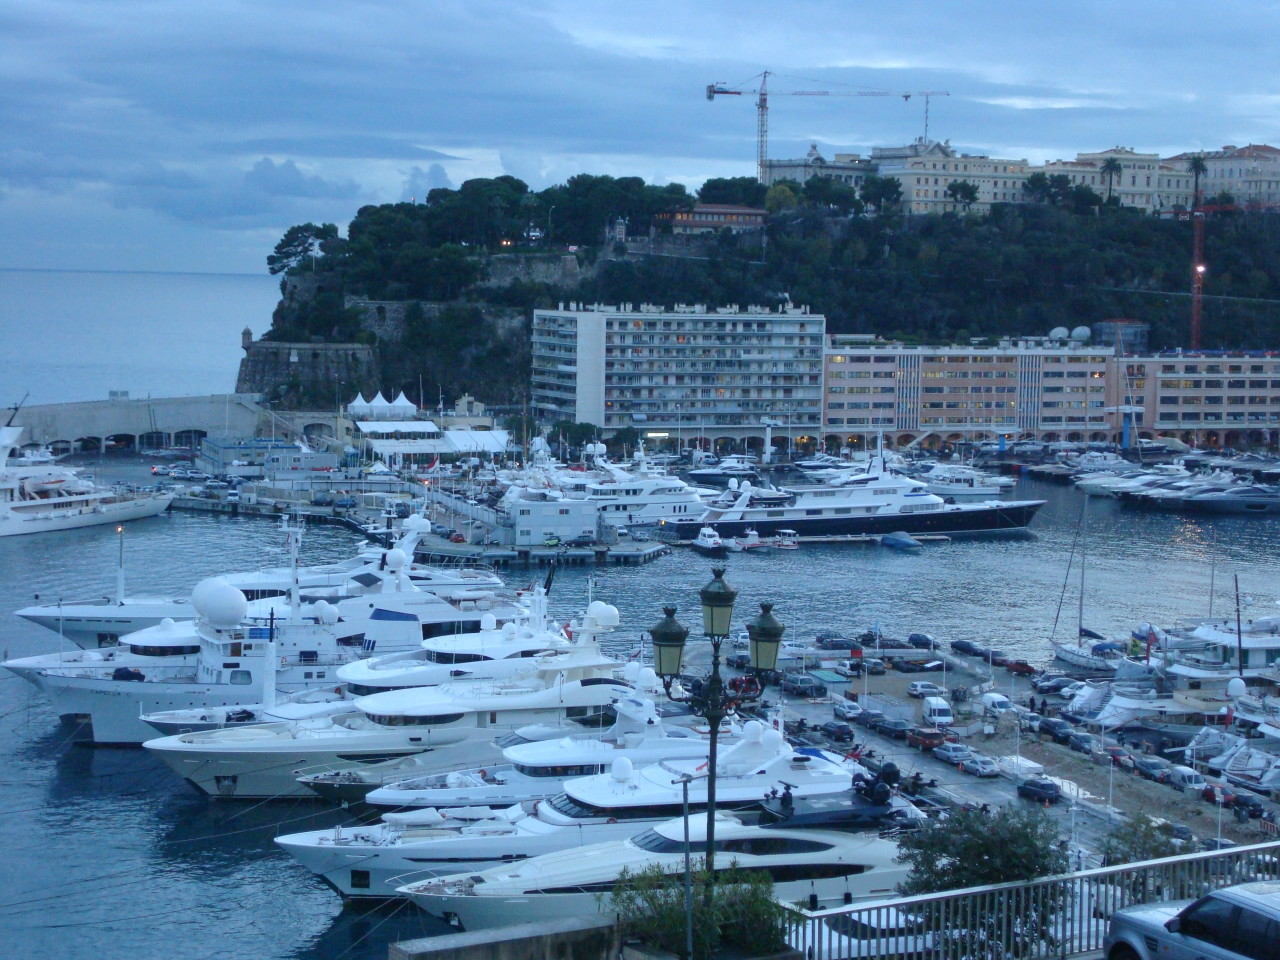 Monaco yachts